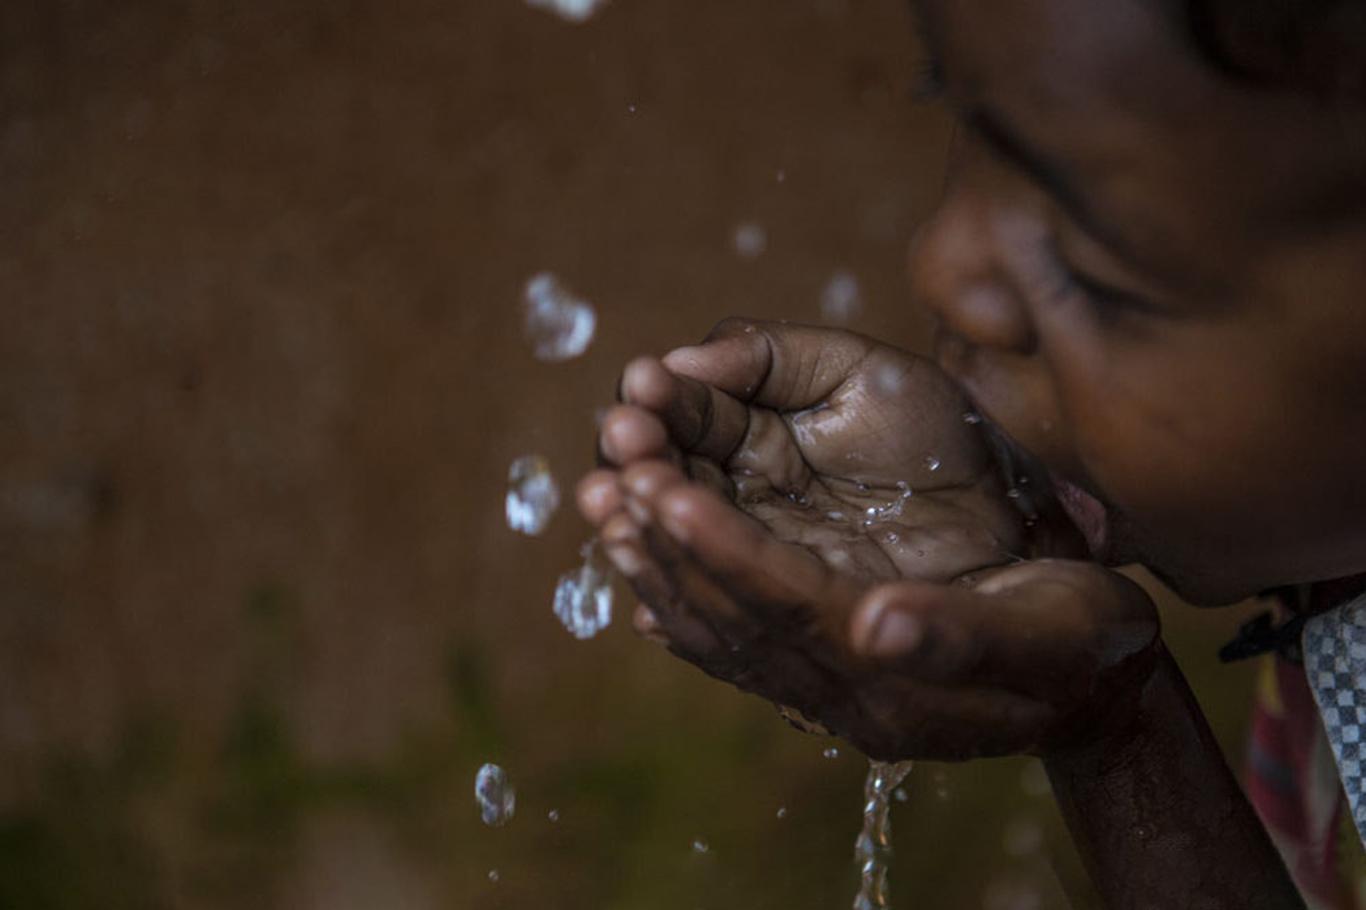  2 milyar insan temiz su sıkıntısı yaşıyor